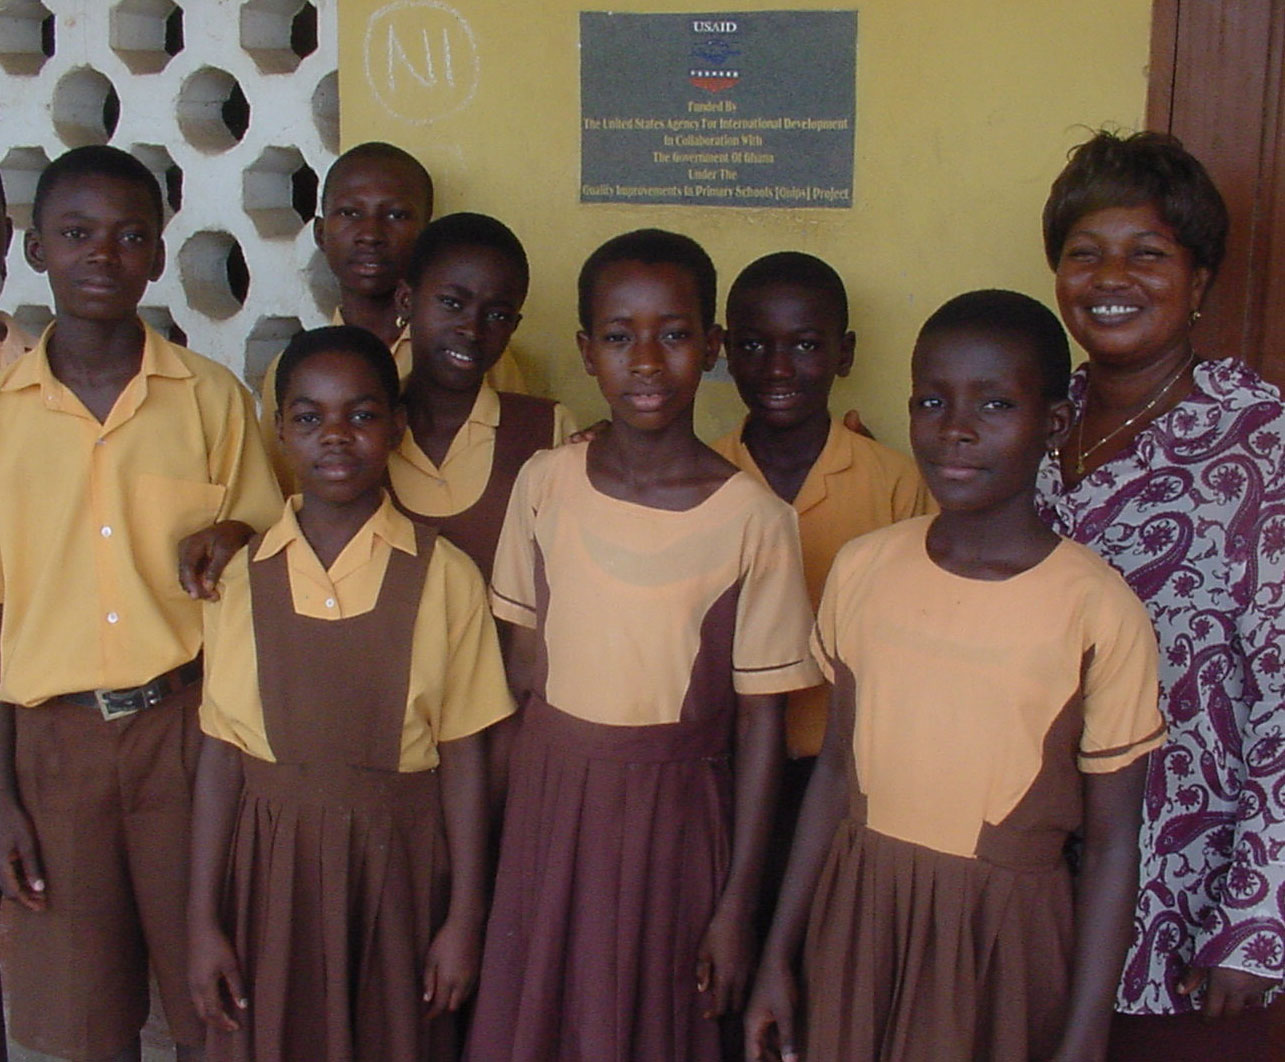 Kids in Ghana ready for school